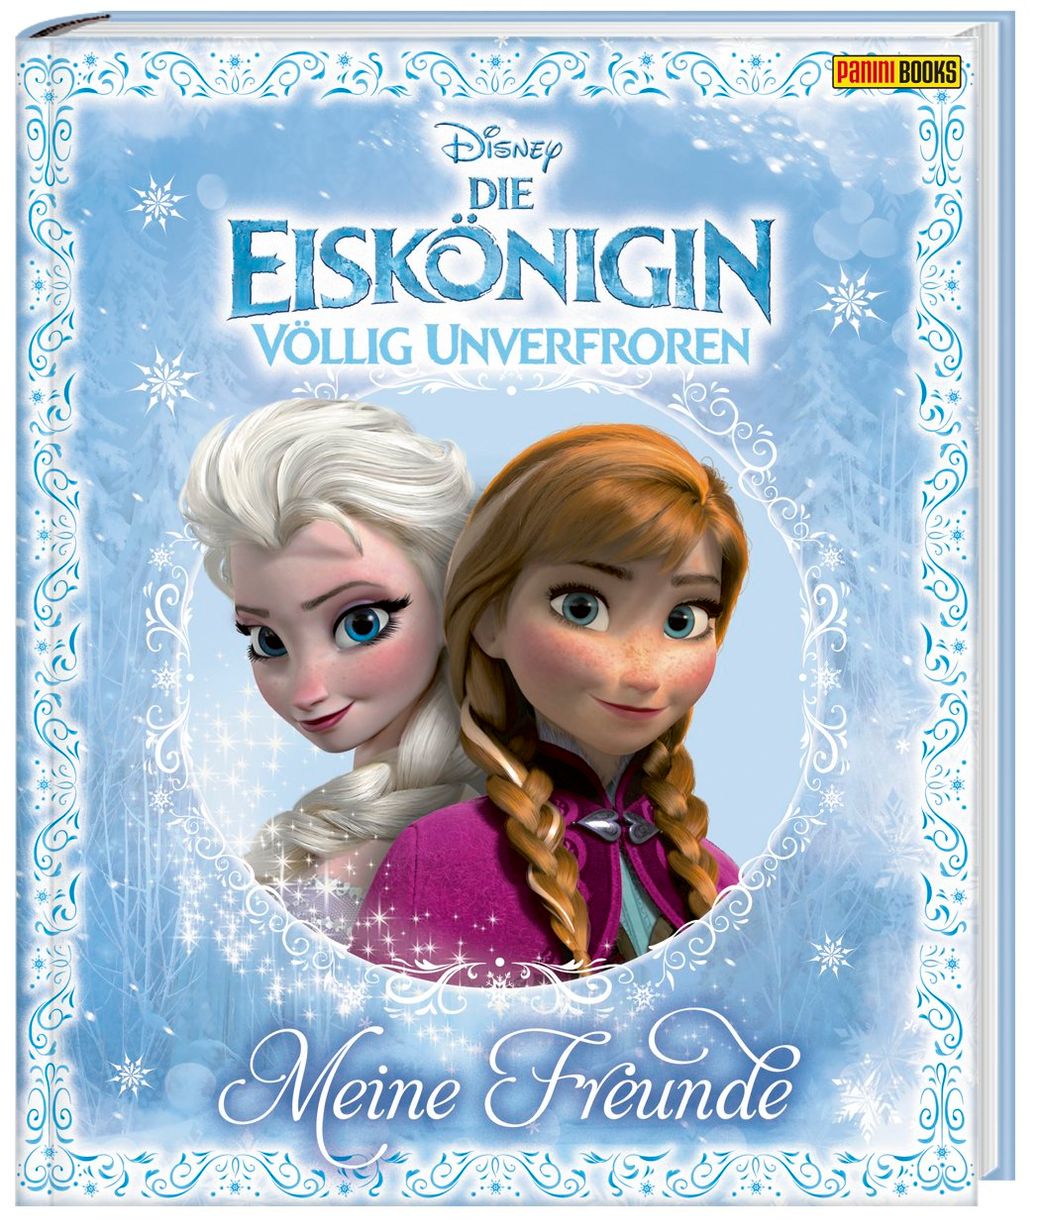 Disney Die Eiskönigin - Völlig unverfroren Freundebuch kaufen